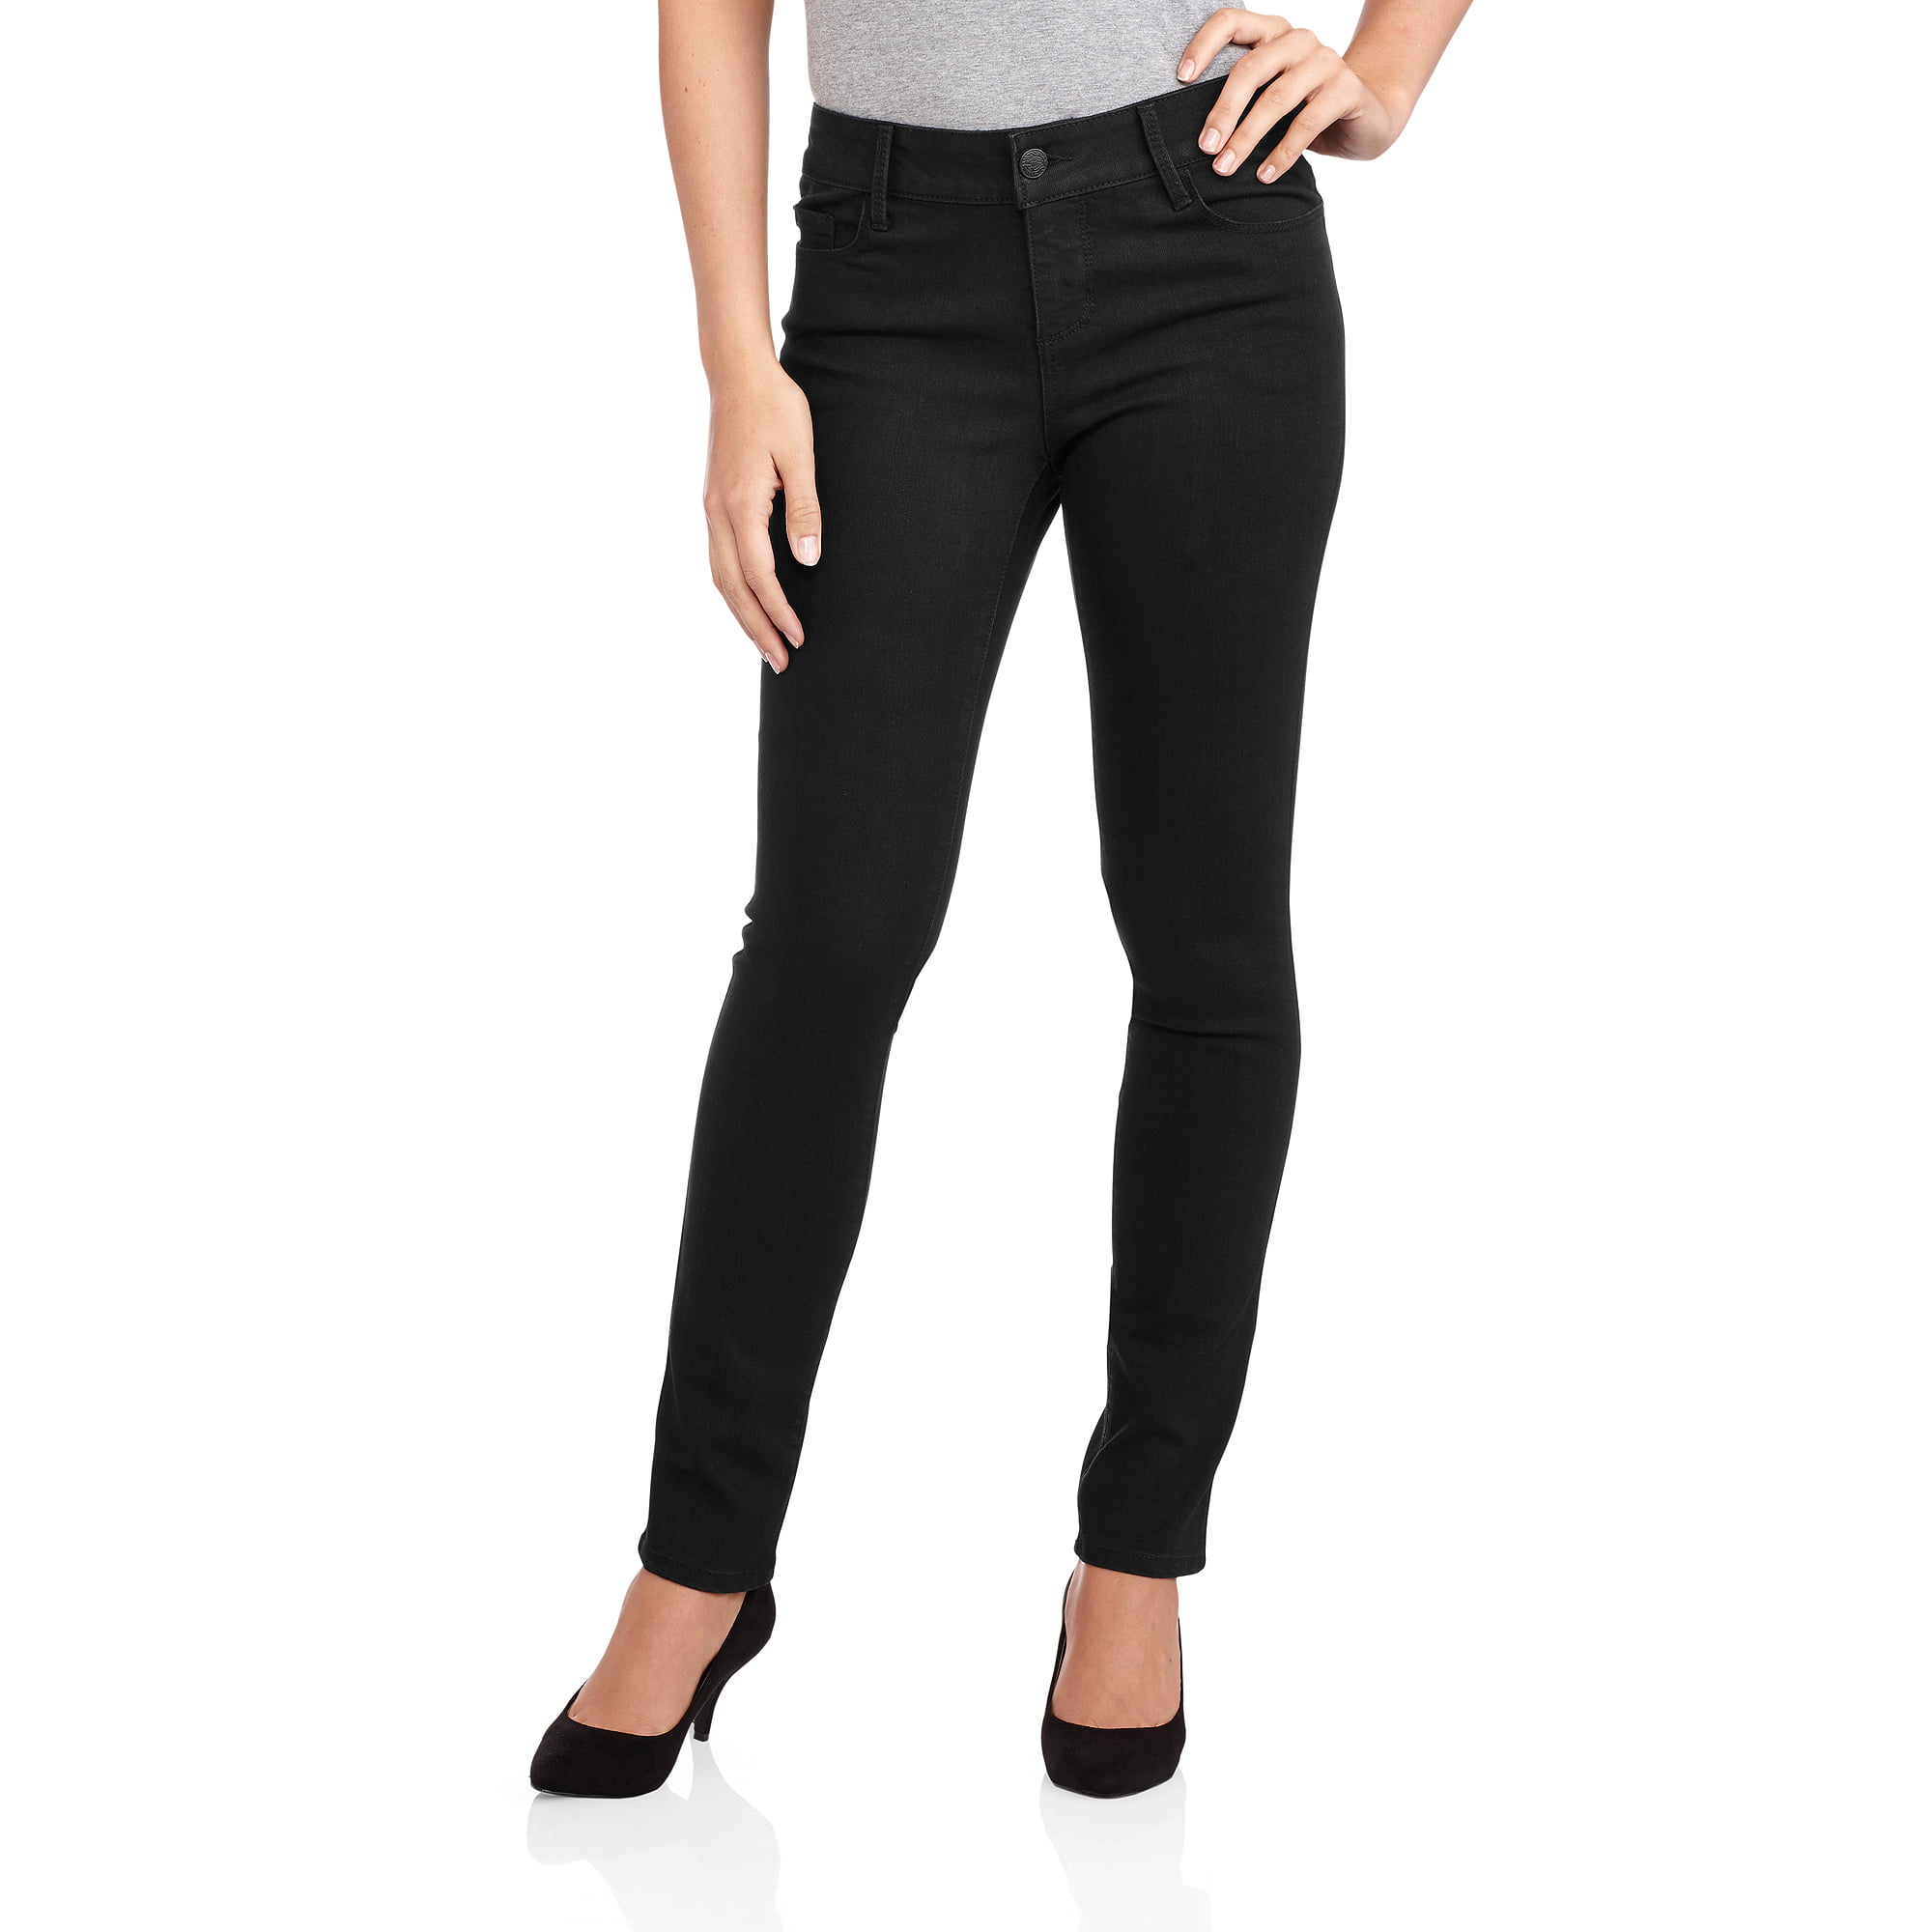 Women's Comfort Skinny Jeans - Walmart.com